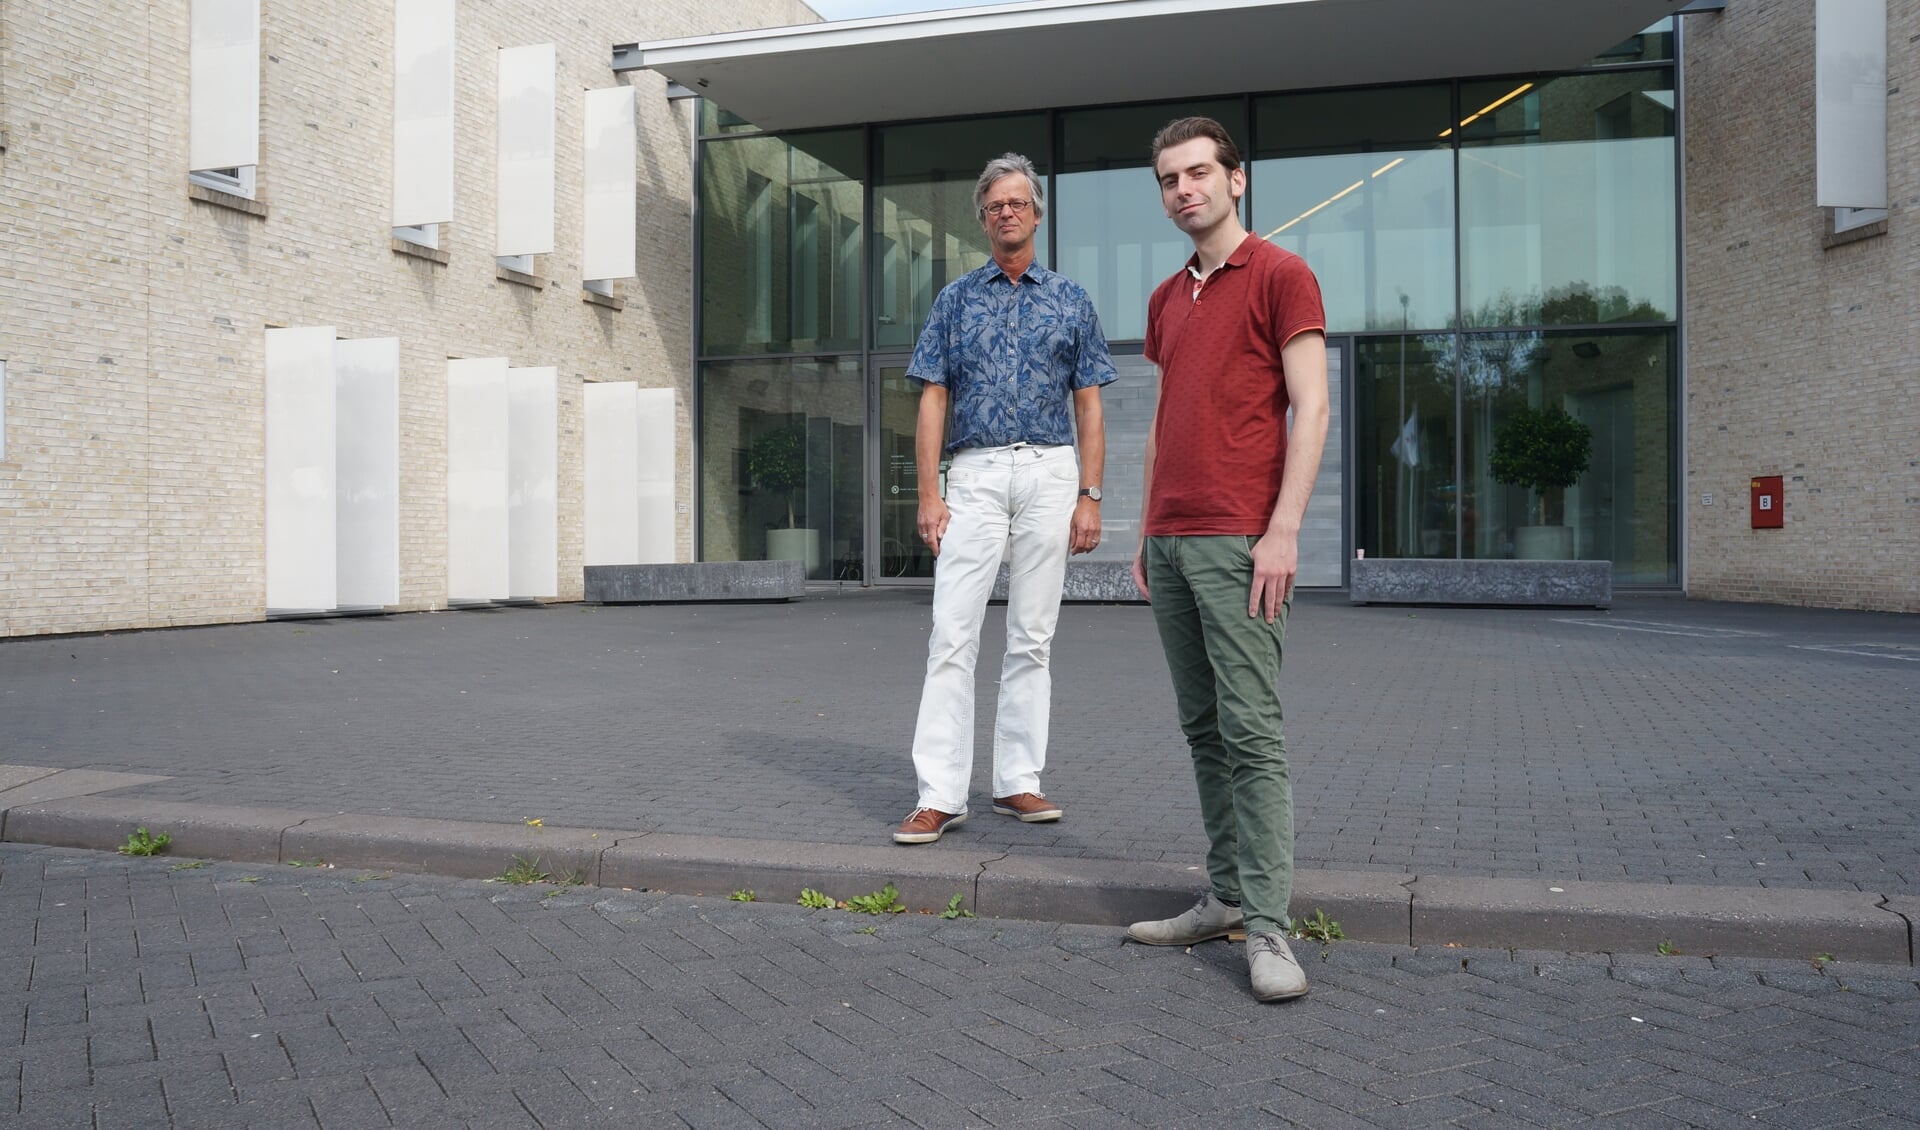 Wethouder Paul Hofman (rechts) en duurzaamheidscoördinator Erik Mol van de gemeente Bronckhorst voor het duurzame gemeentehuis in Hengelo Gld. Foto: Achterhoek Onderneemt Duurzaam